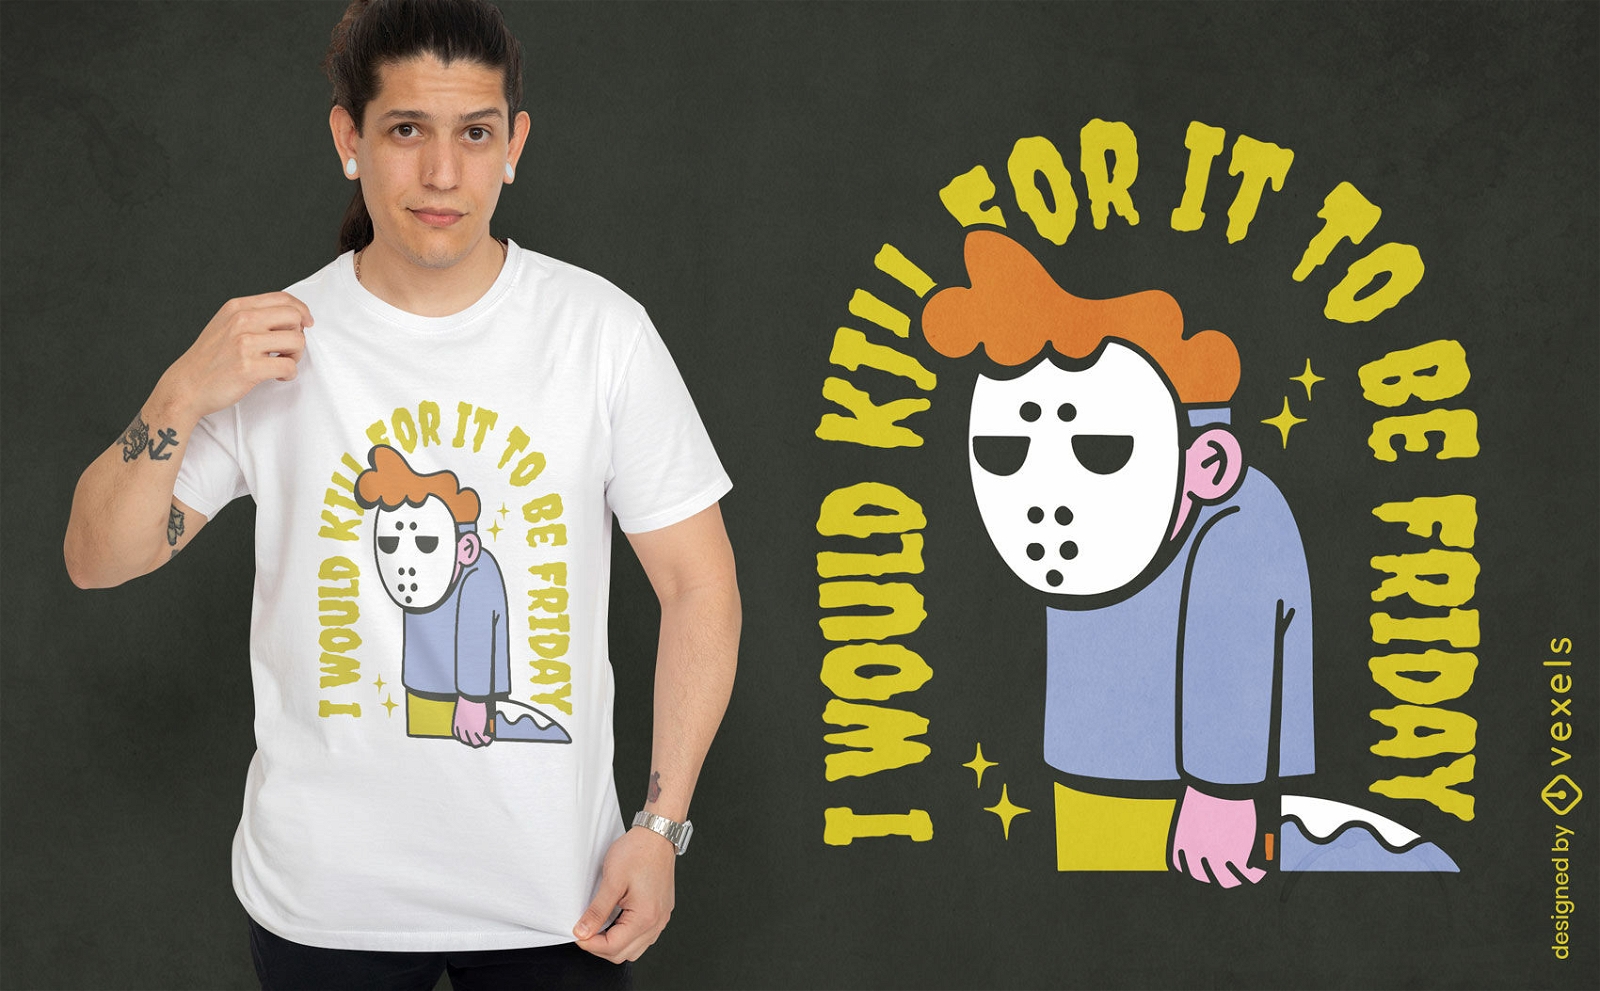 Mann mit Hockeymasken-Halloween-T-Shirt-Design